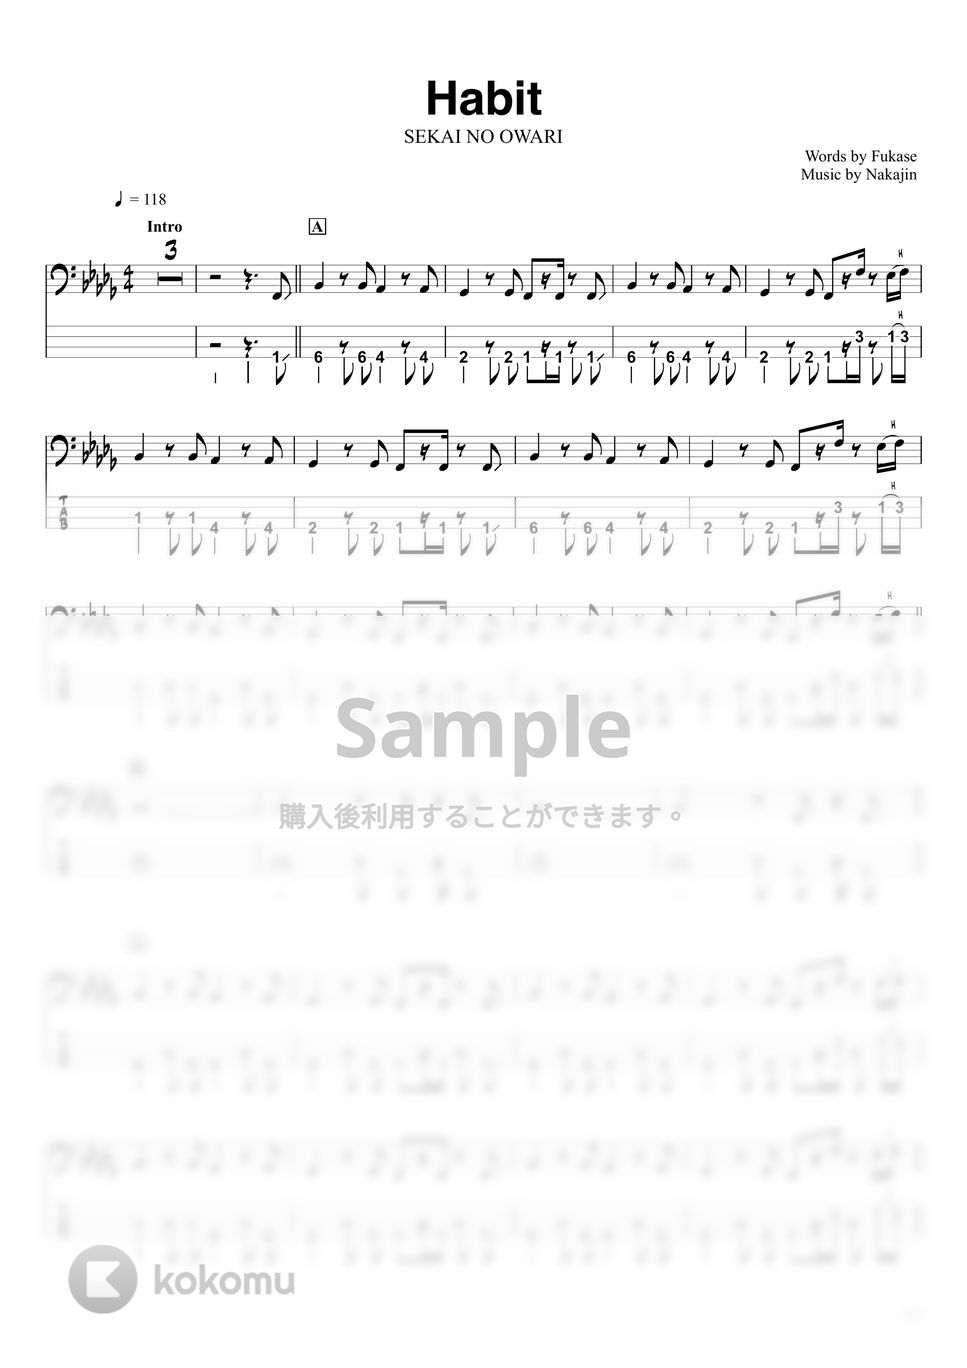 SEKAI NO OWARI - Habit (ベースTAB譜☆4弦ベース対応) by swbass